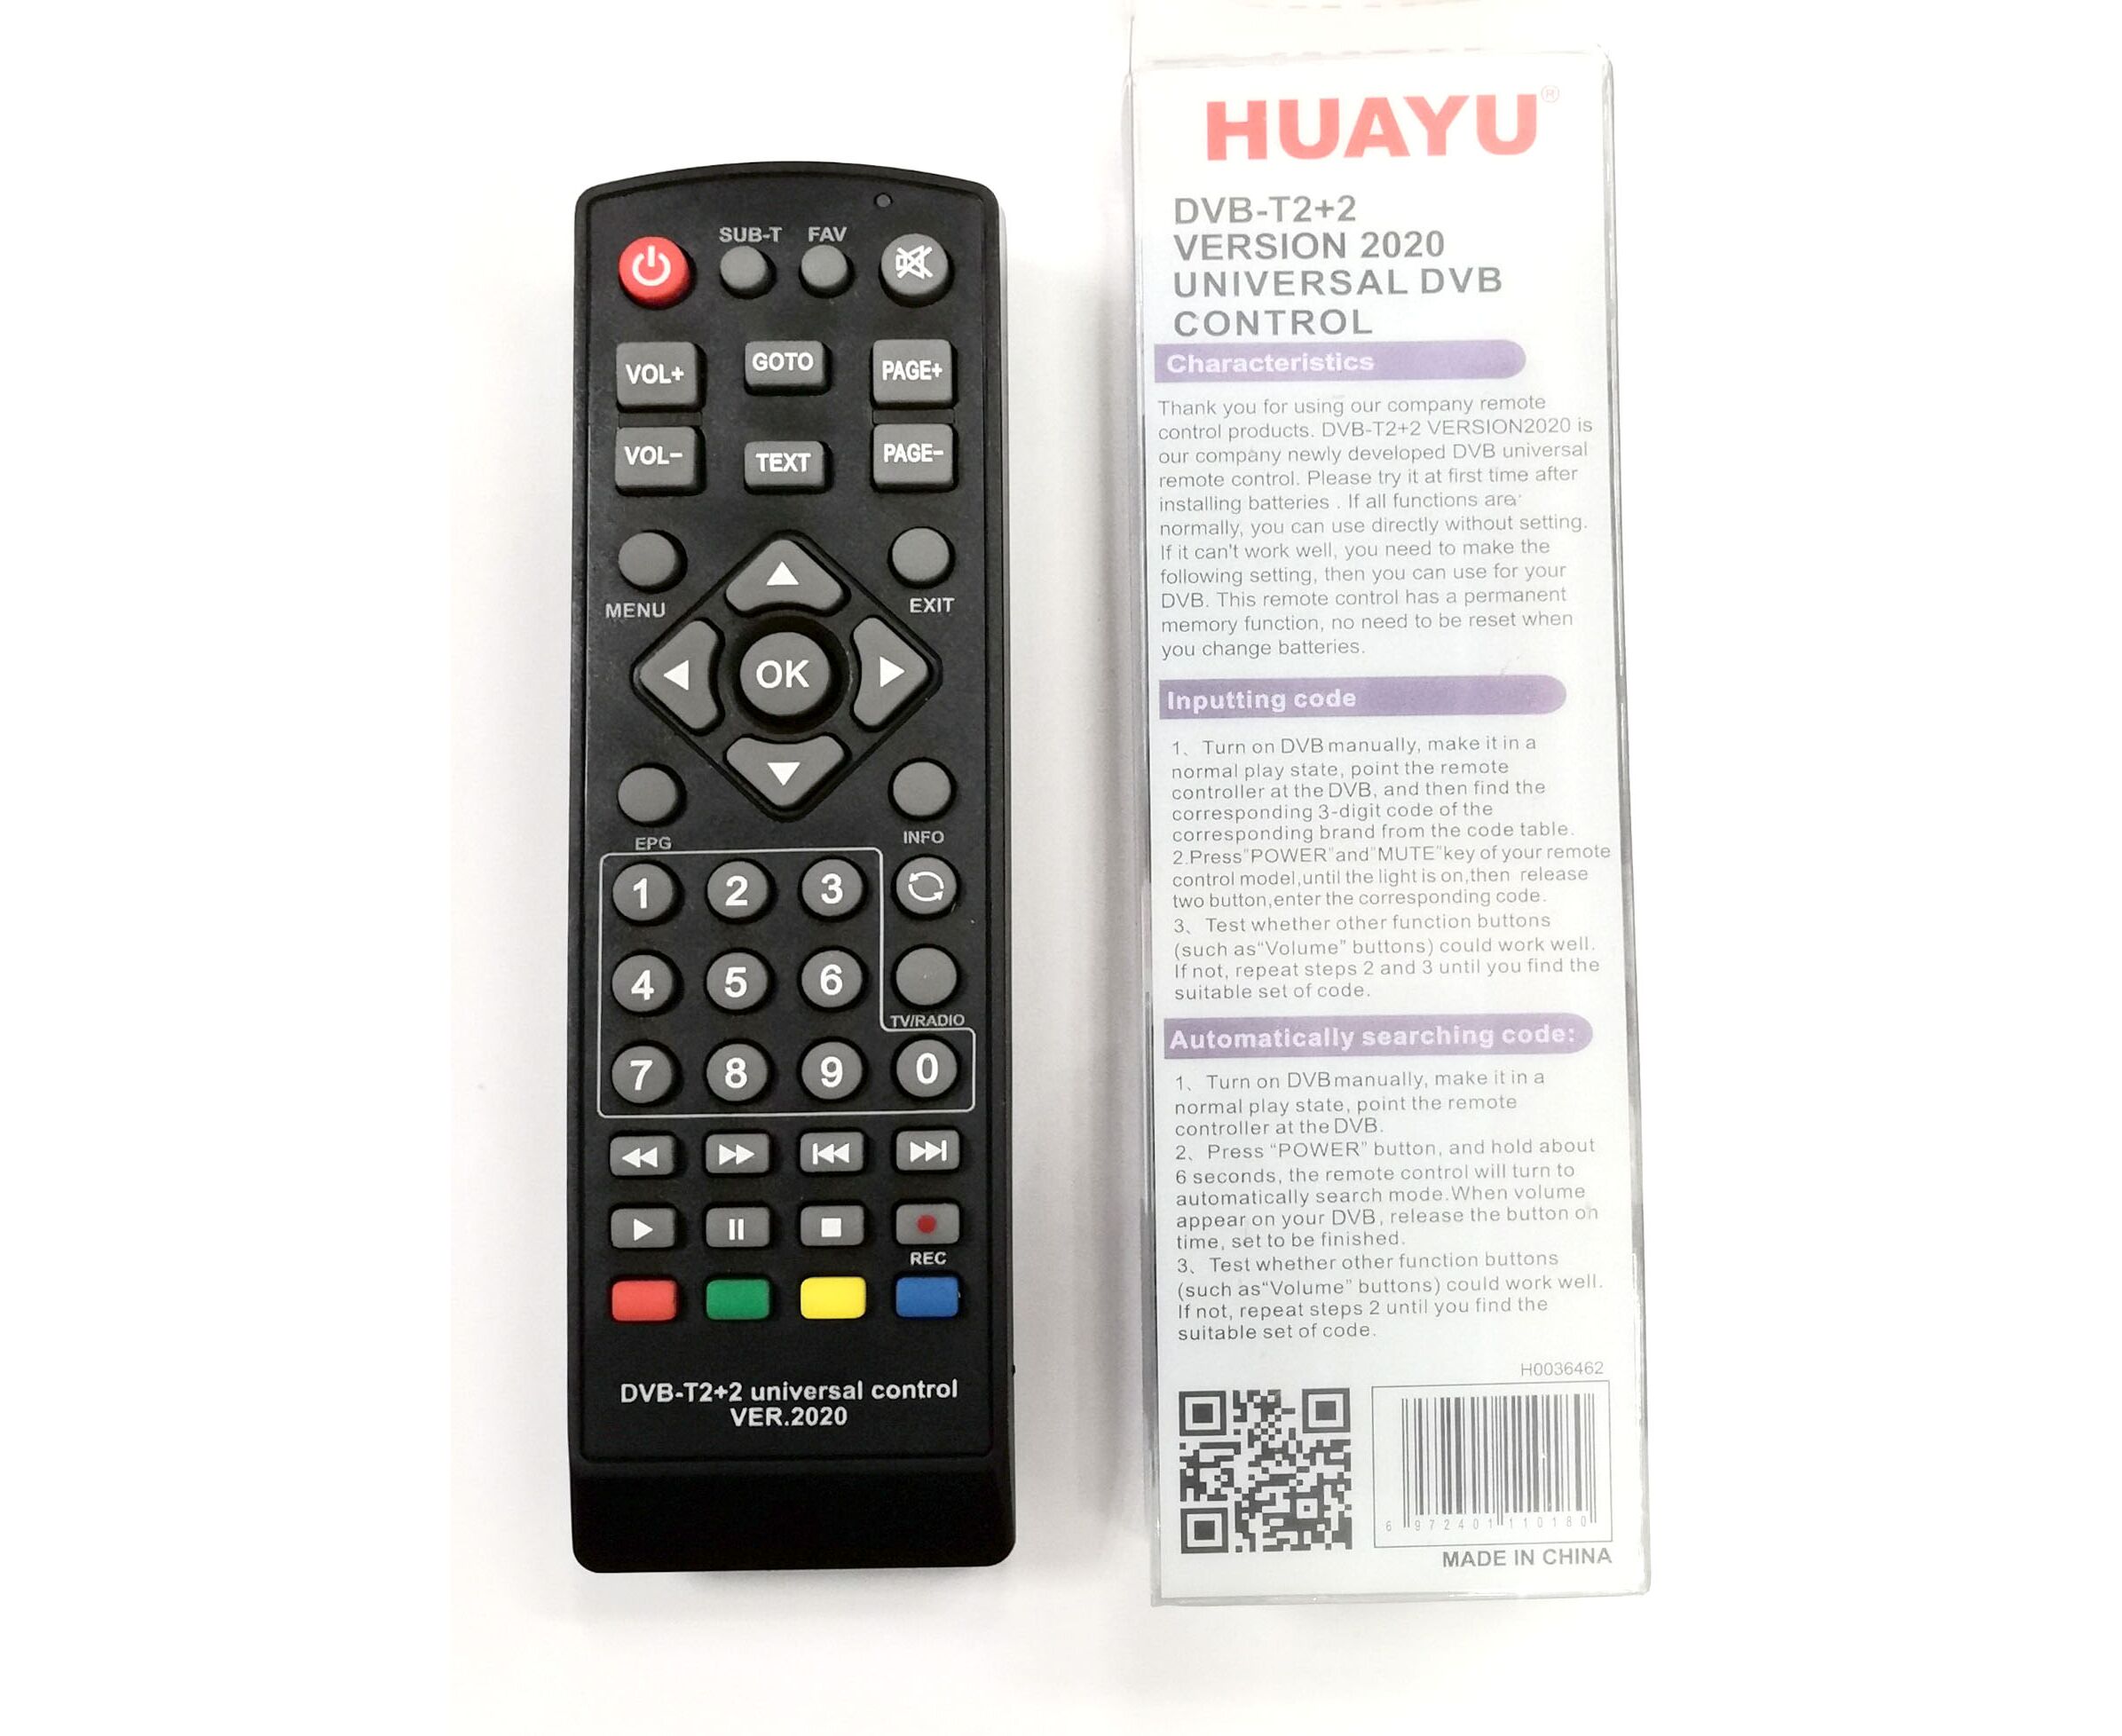 Dvb t2 huayu пульт код. Пульт универсальный Huayu для приставок DVB-t2+2 версия 2020. Универсальный пульт Huayu DVB-t2+t3. Универсальный пульт Huayu DVB-t2+2 ver.2020. Универсальный пульт Huayu DVB-t2+TV ver.2020.